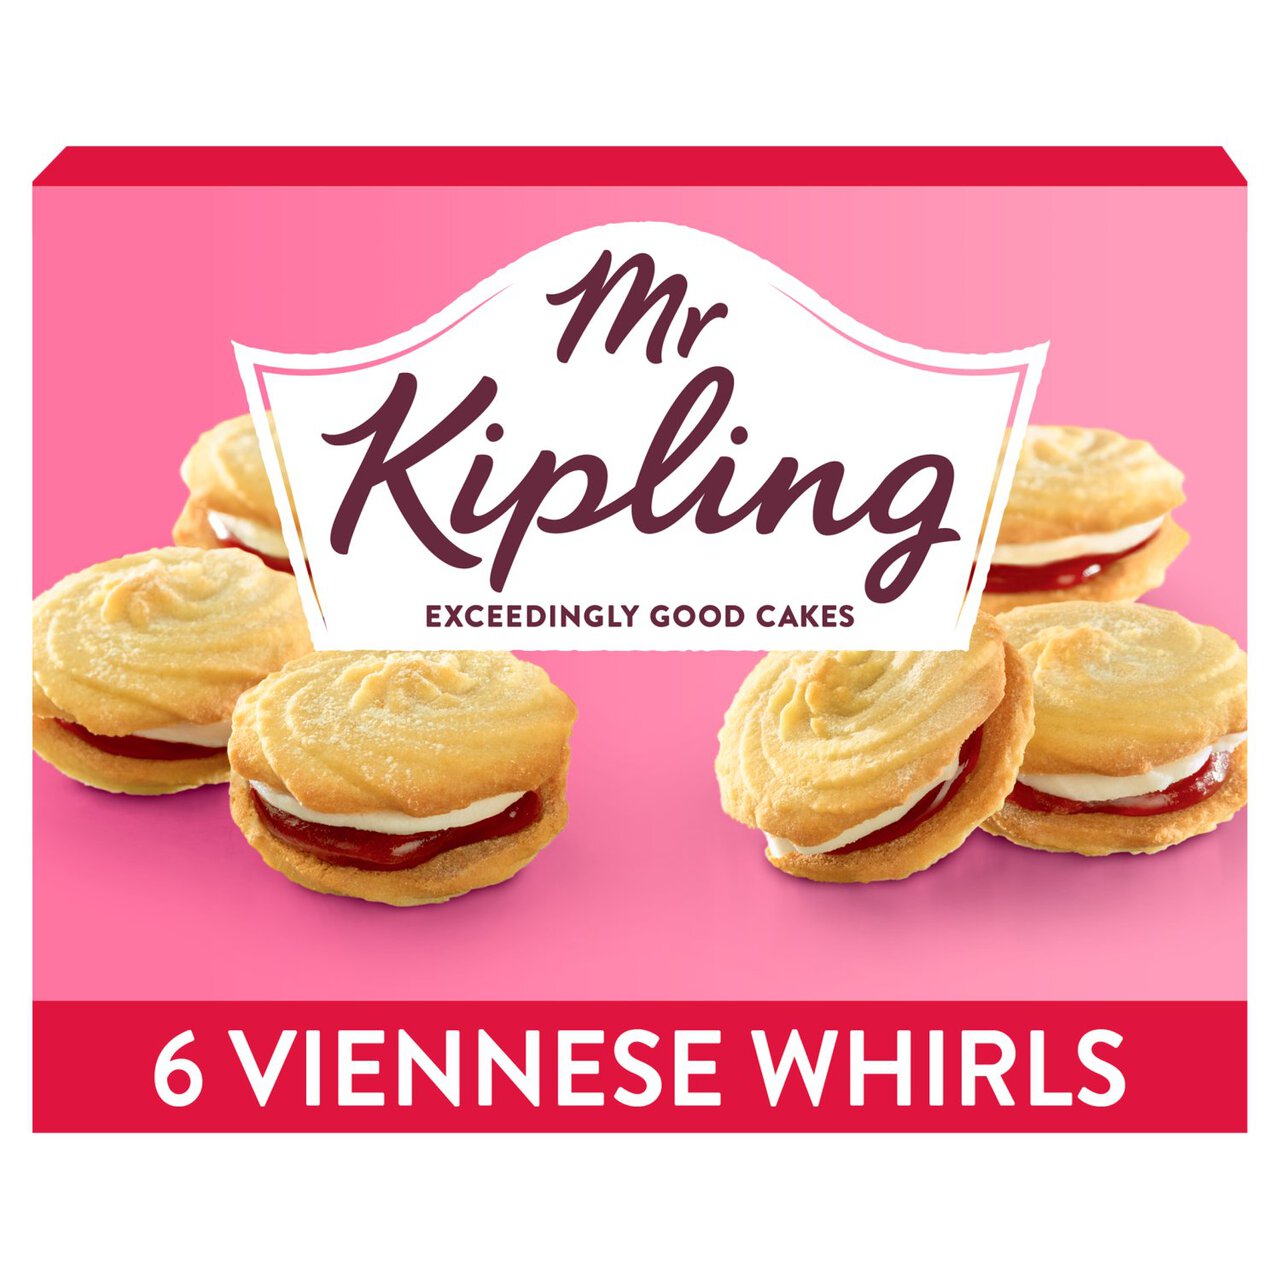 Mr Kipling Viennese Whirls 6 per pack